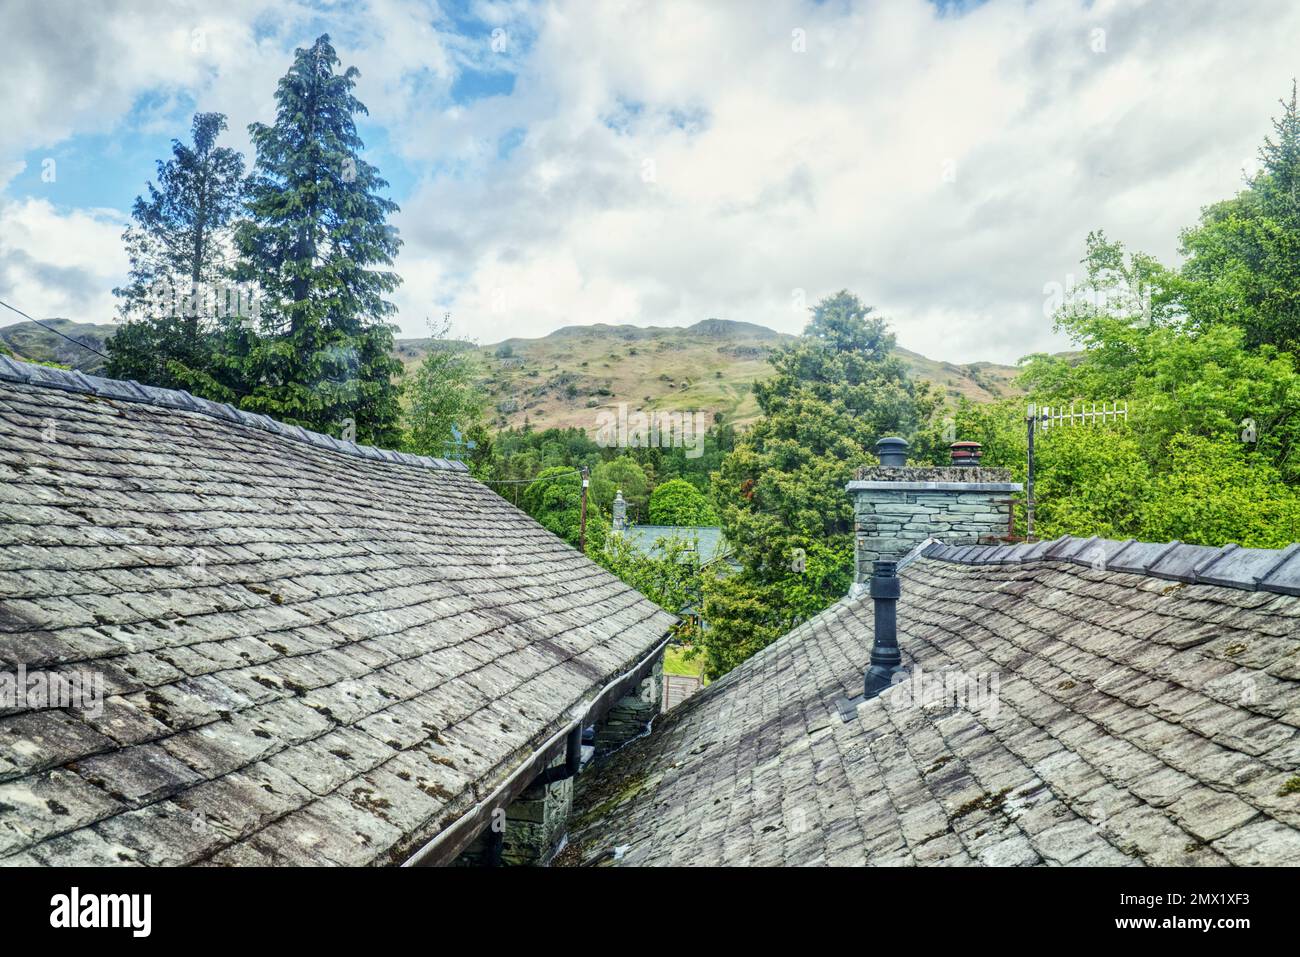 Elterwater, English Lake District, Cumbria, England, Großbritannien - mit Blick auf Schieferfliesen und Schornsteine von Ferienhüttendächern in Richtung der Hügel Stockfoto